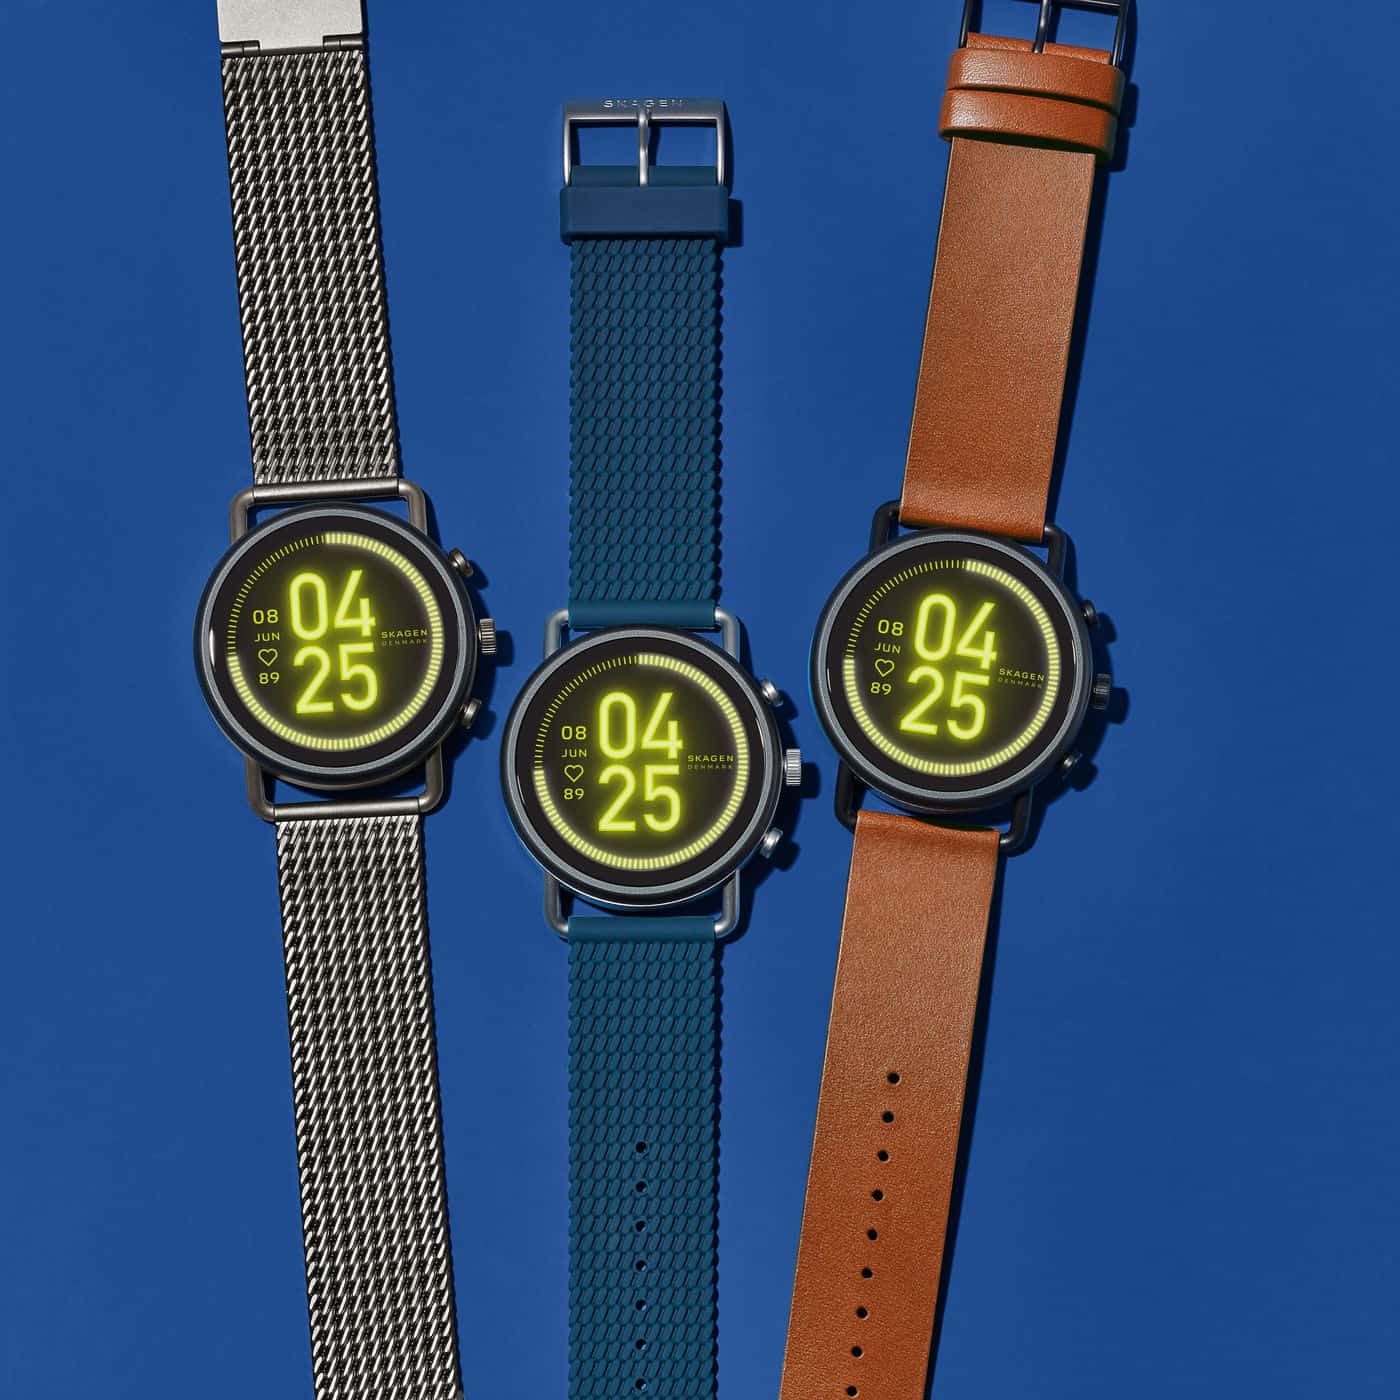 Which smartwatches support WearOS